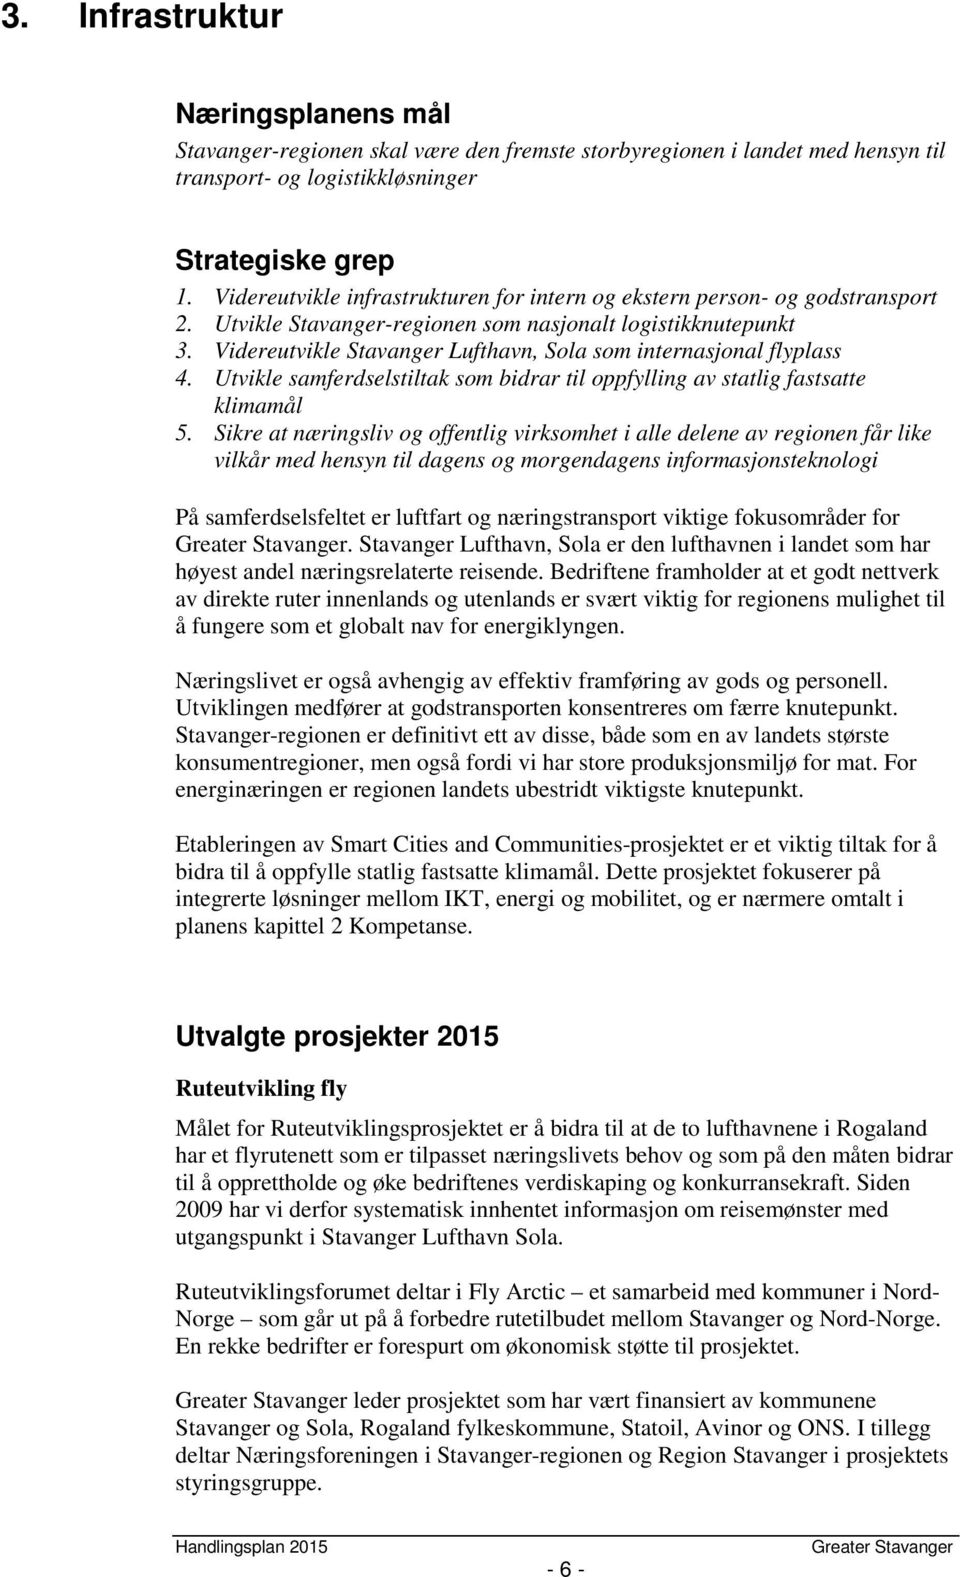 Videreutvikle Stavanger Lufthavn, Sola som internasjonal flyplass 4. Utvikle samferdselstiltak som bidrar til oppfylling av statlig fastsatte klimamål 5.